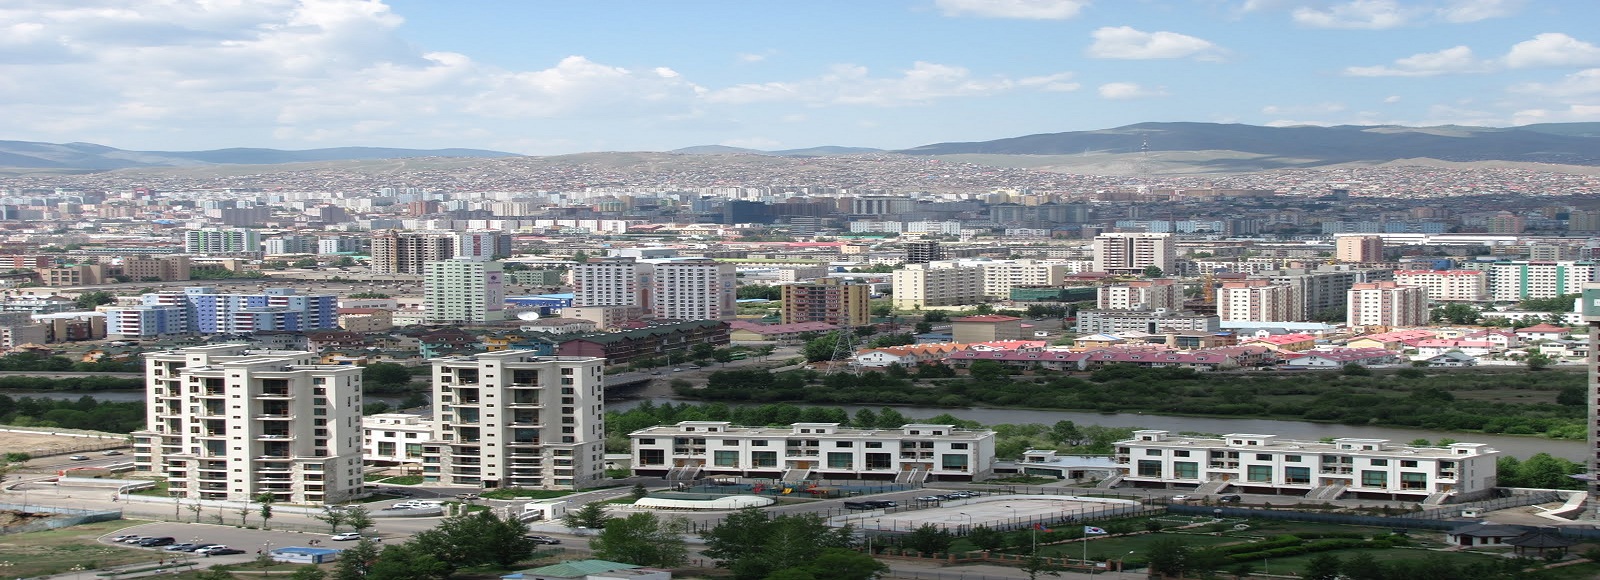 Ofertas de Traslados en Mongolia. Traslados económicos en Mongolia 